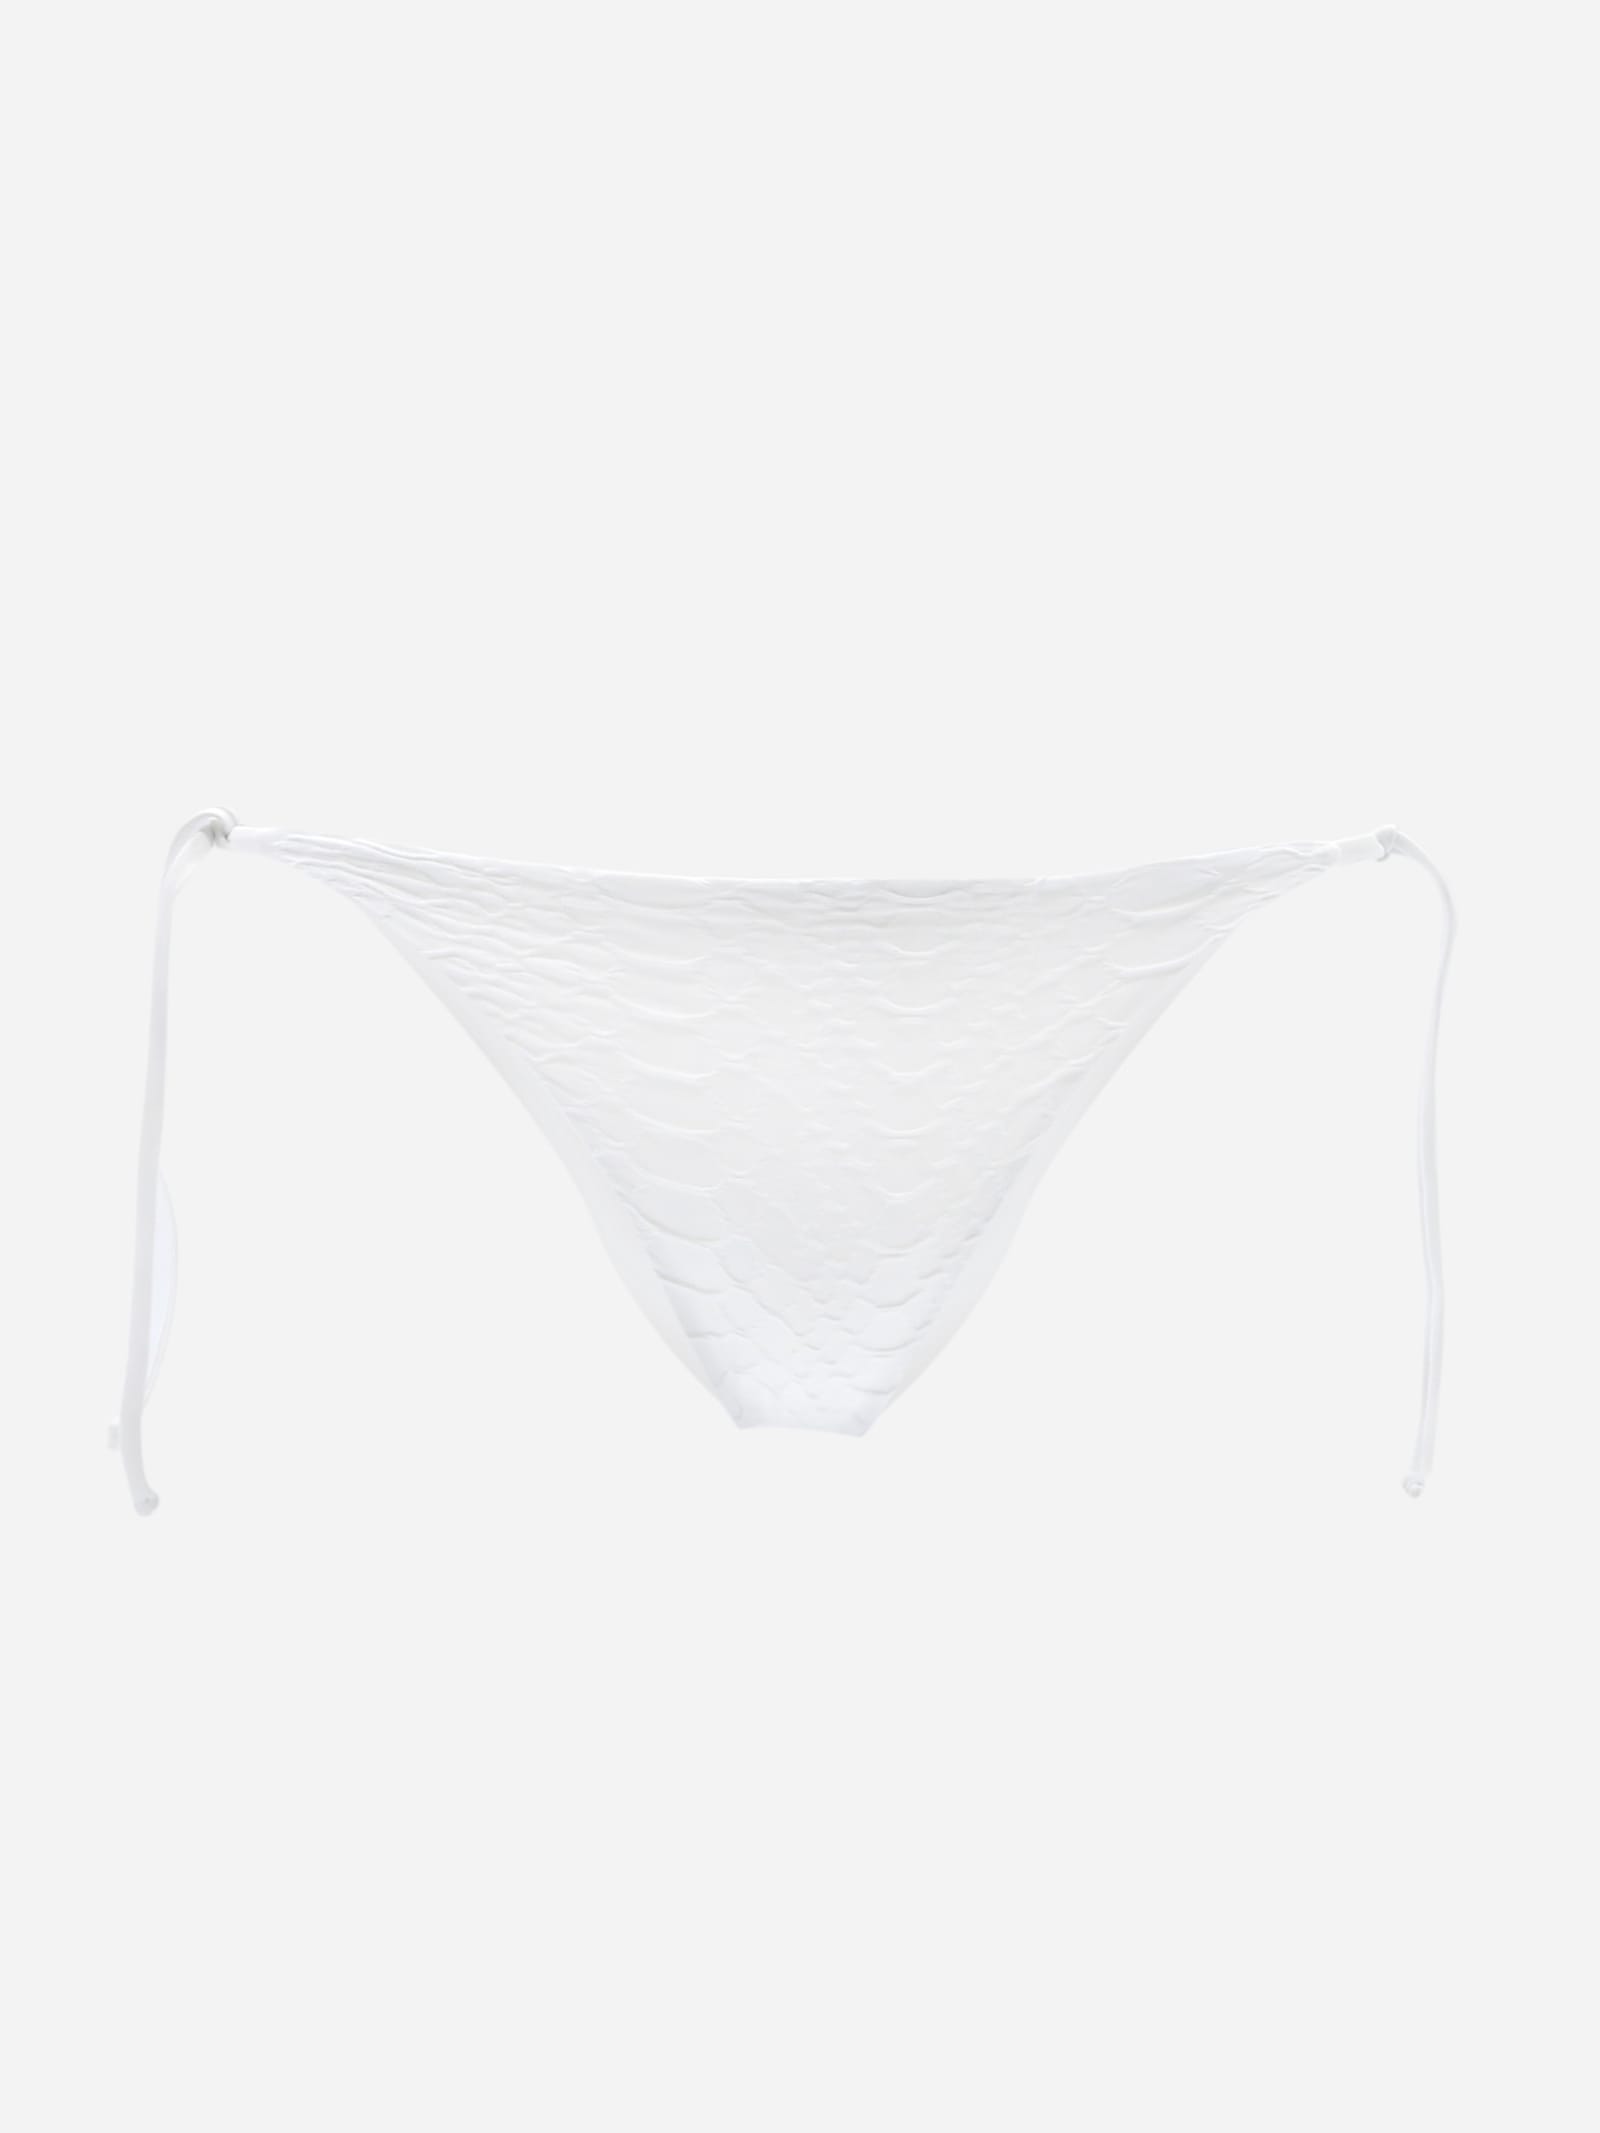 Fisico Cristina Ferrari Bikini Bottoms With An Embroidered Design In White